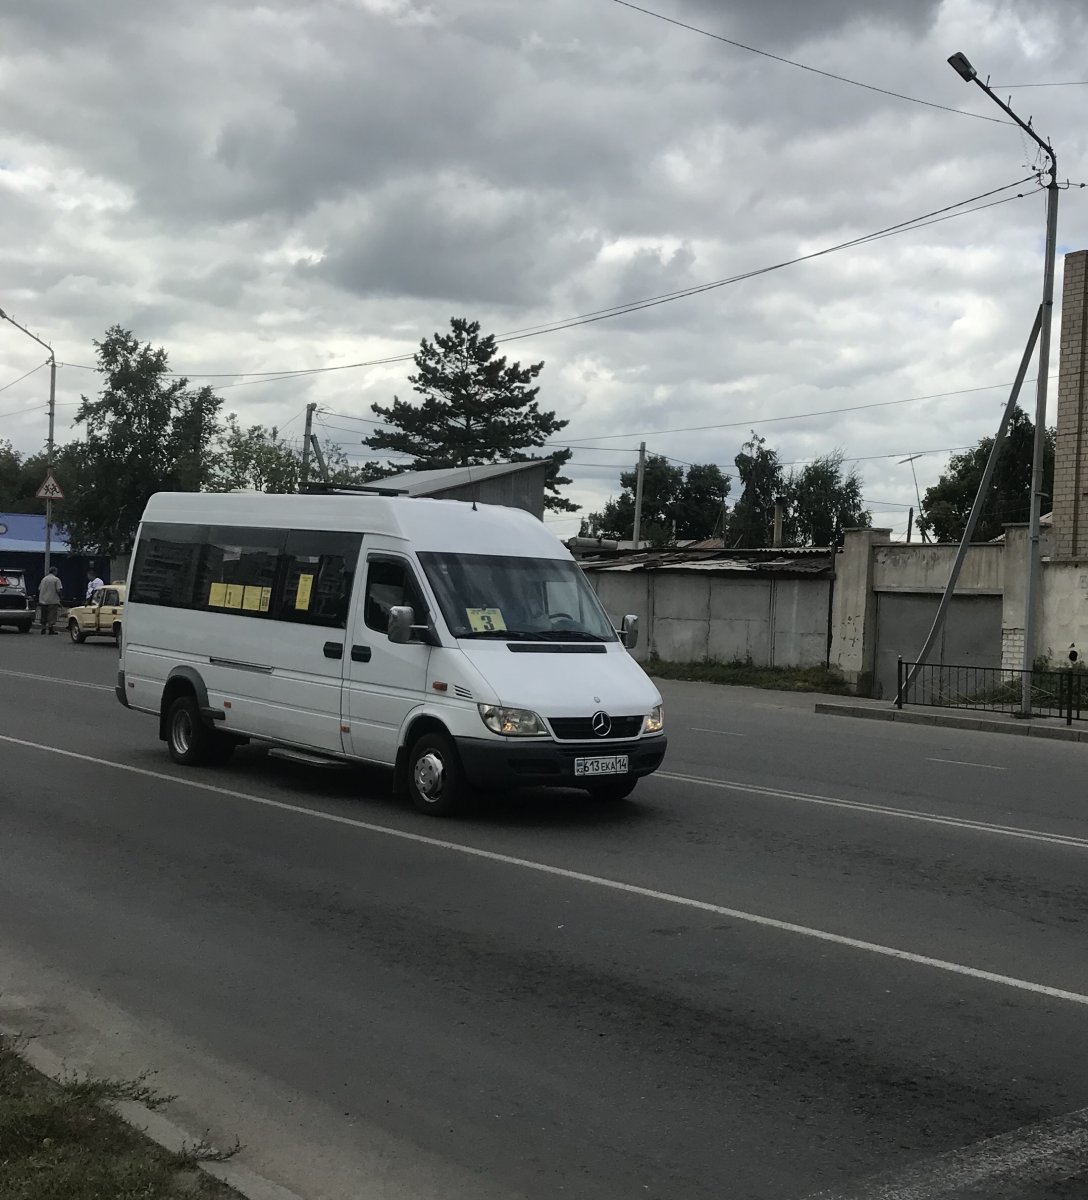 Аким Павлодара приглашает водителей маршрутных такси на встречу